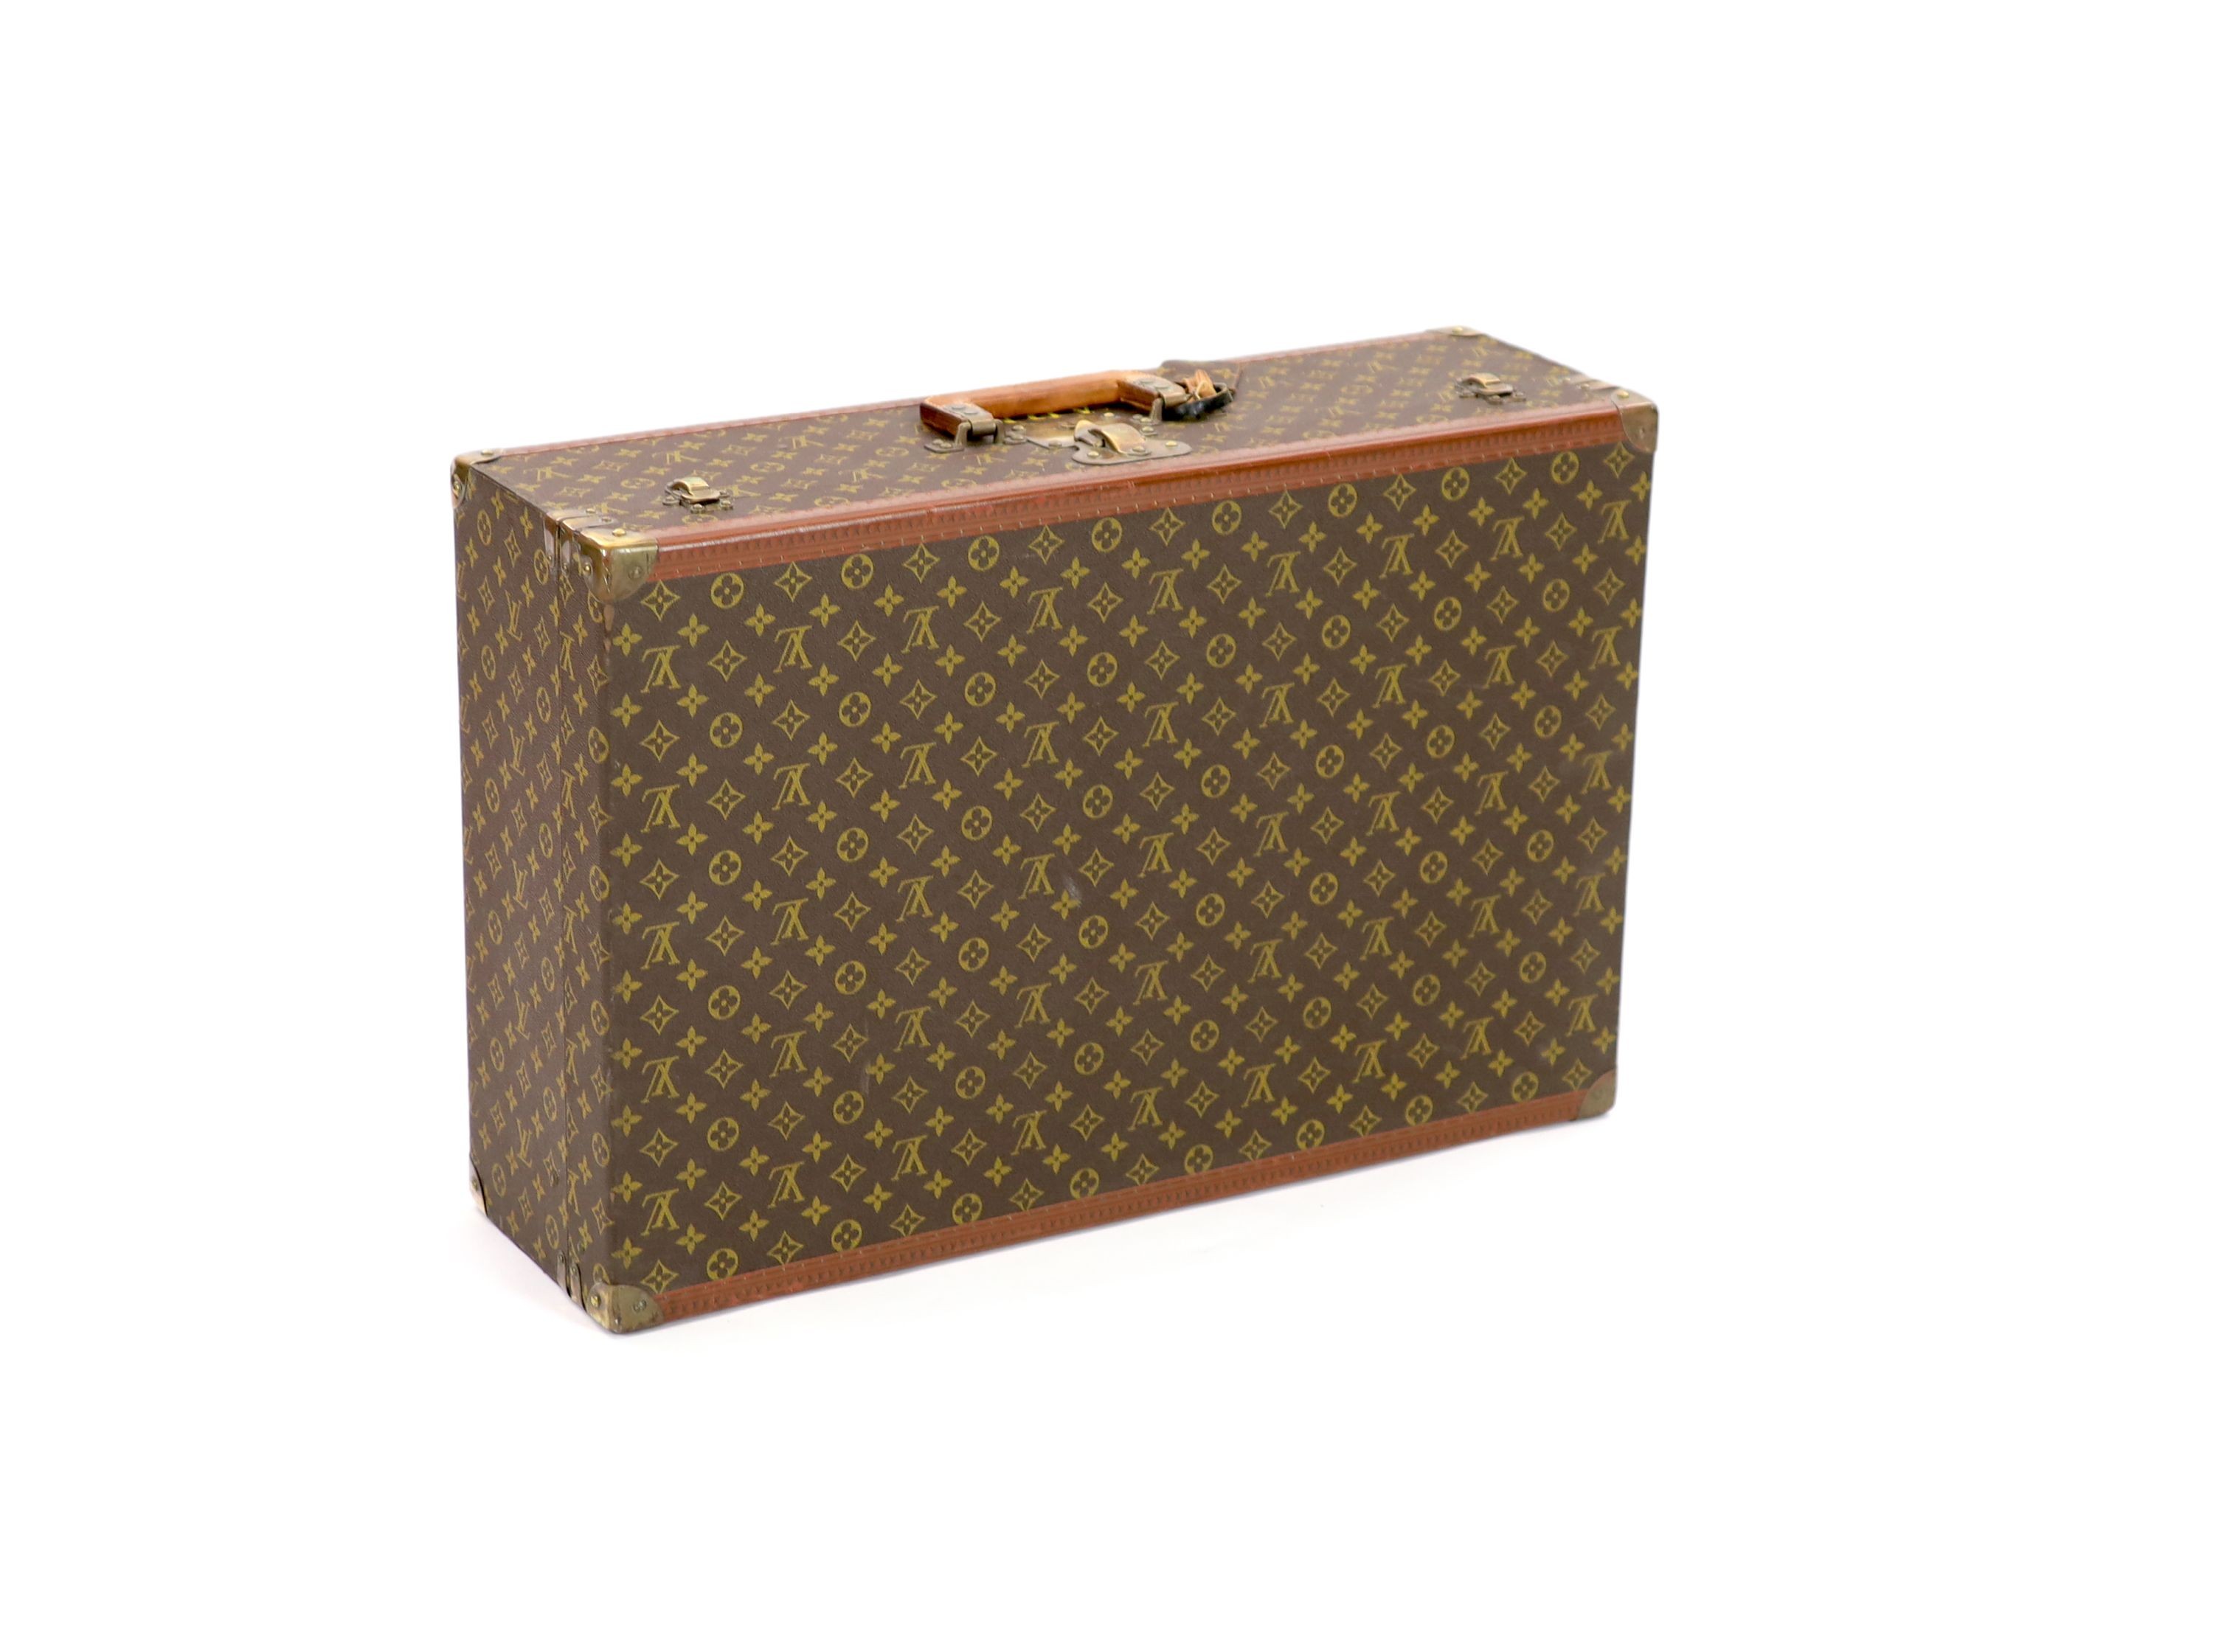 A Louis Vuitton LV pattern suitcase 70 x 47 x 22cm                                                                                                                                                                          